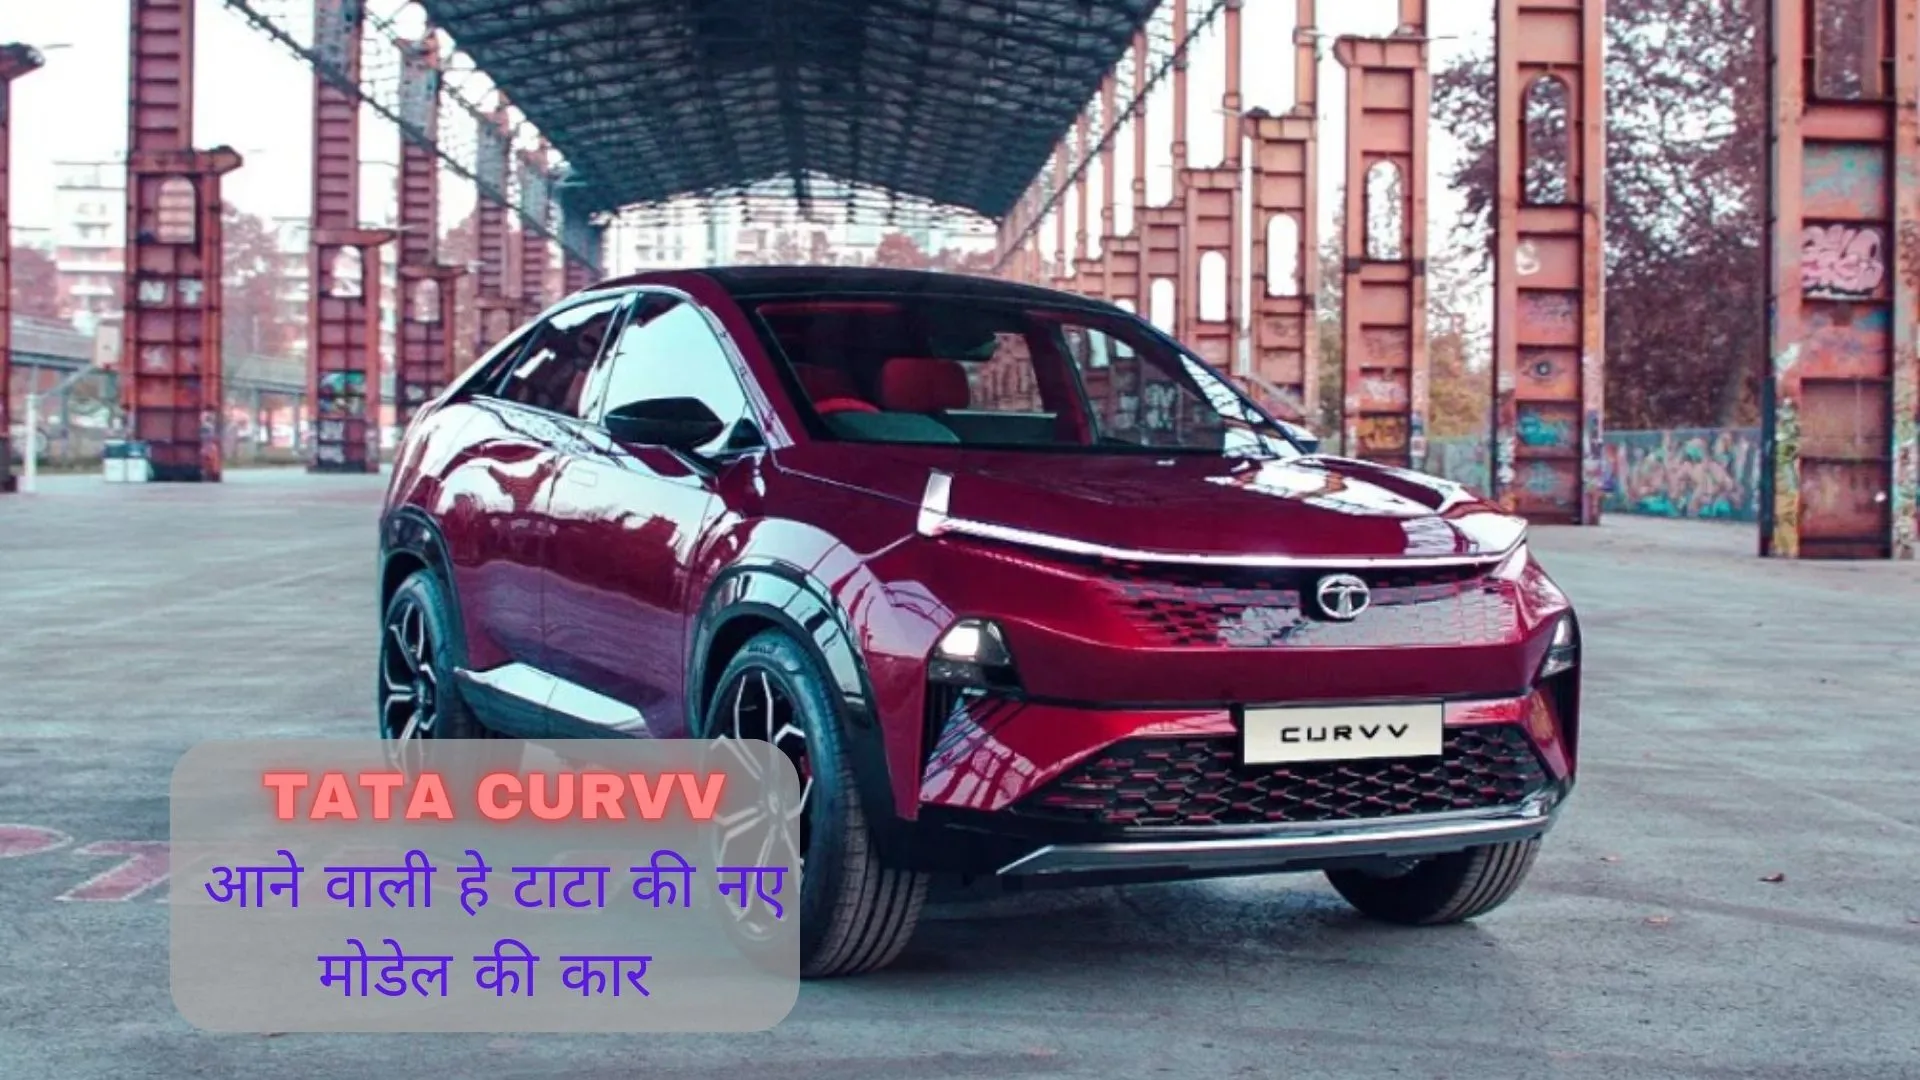 Tata curvv launch date in india